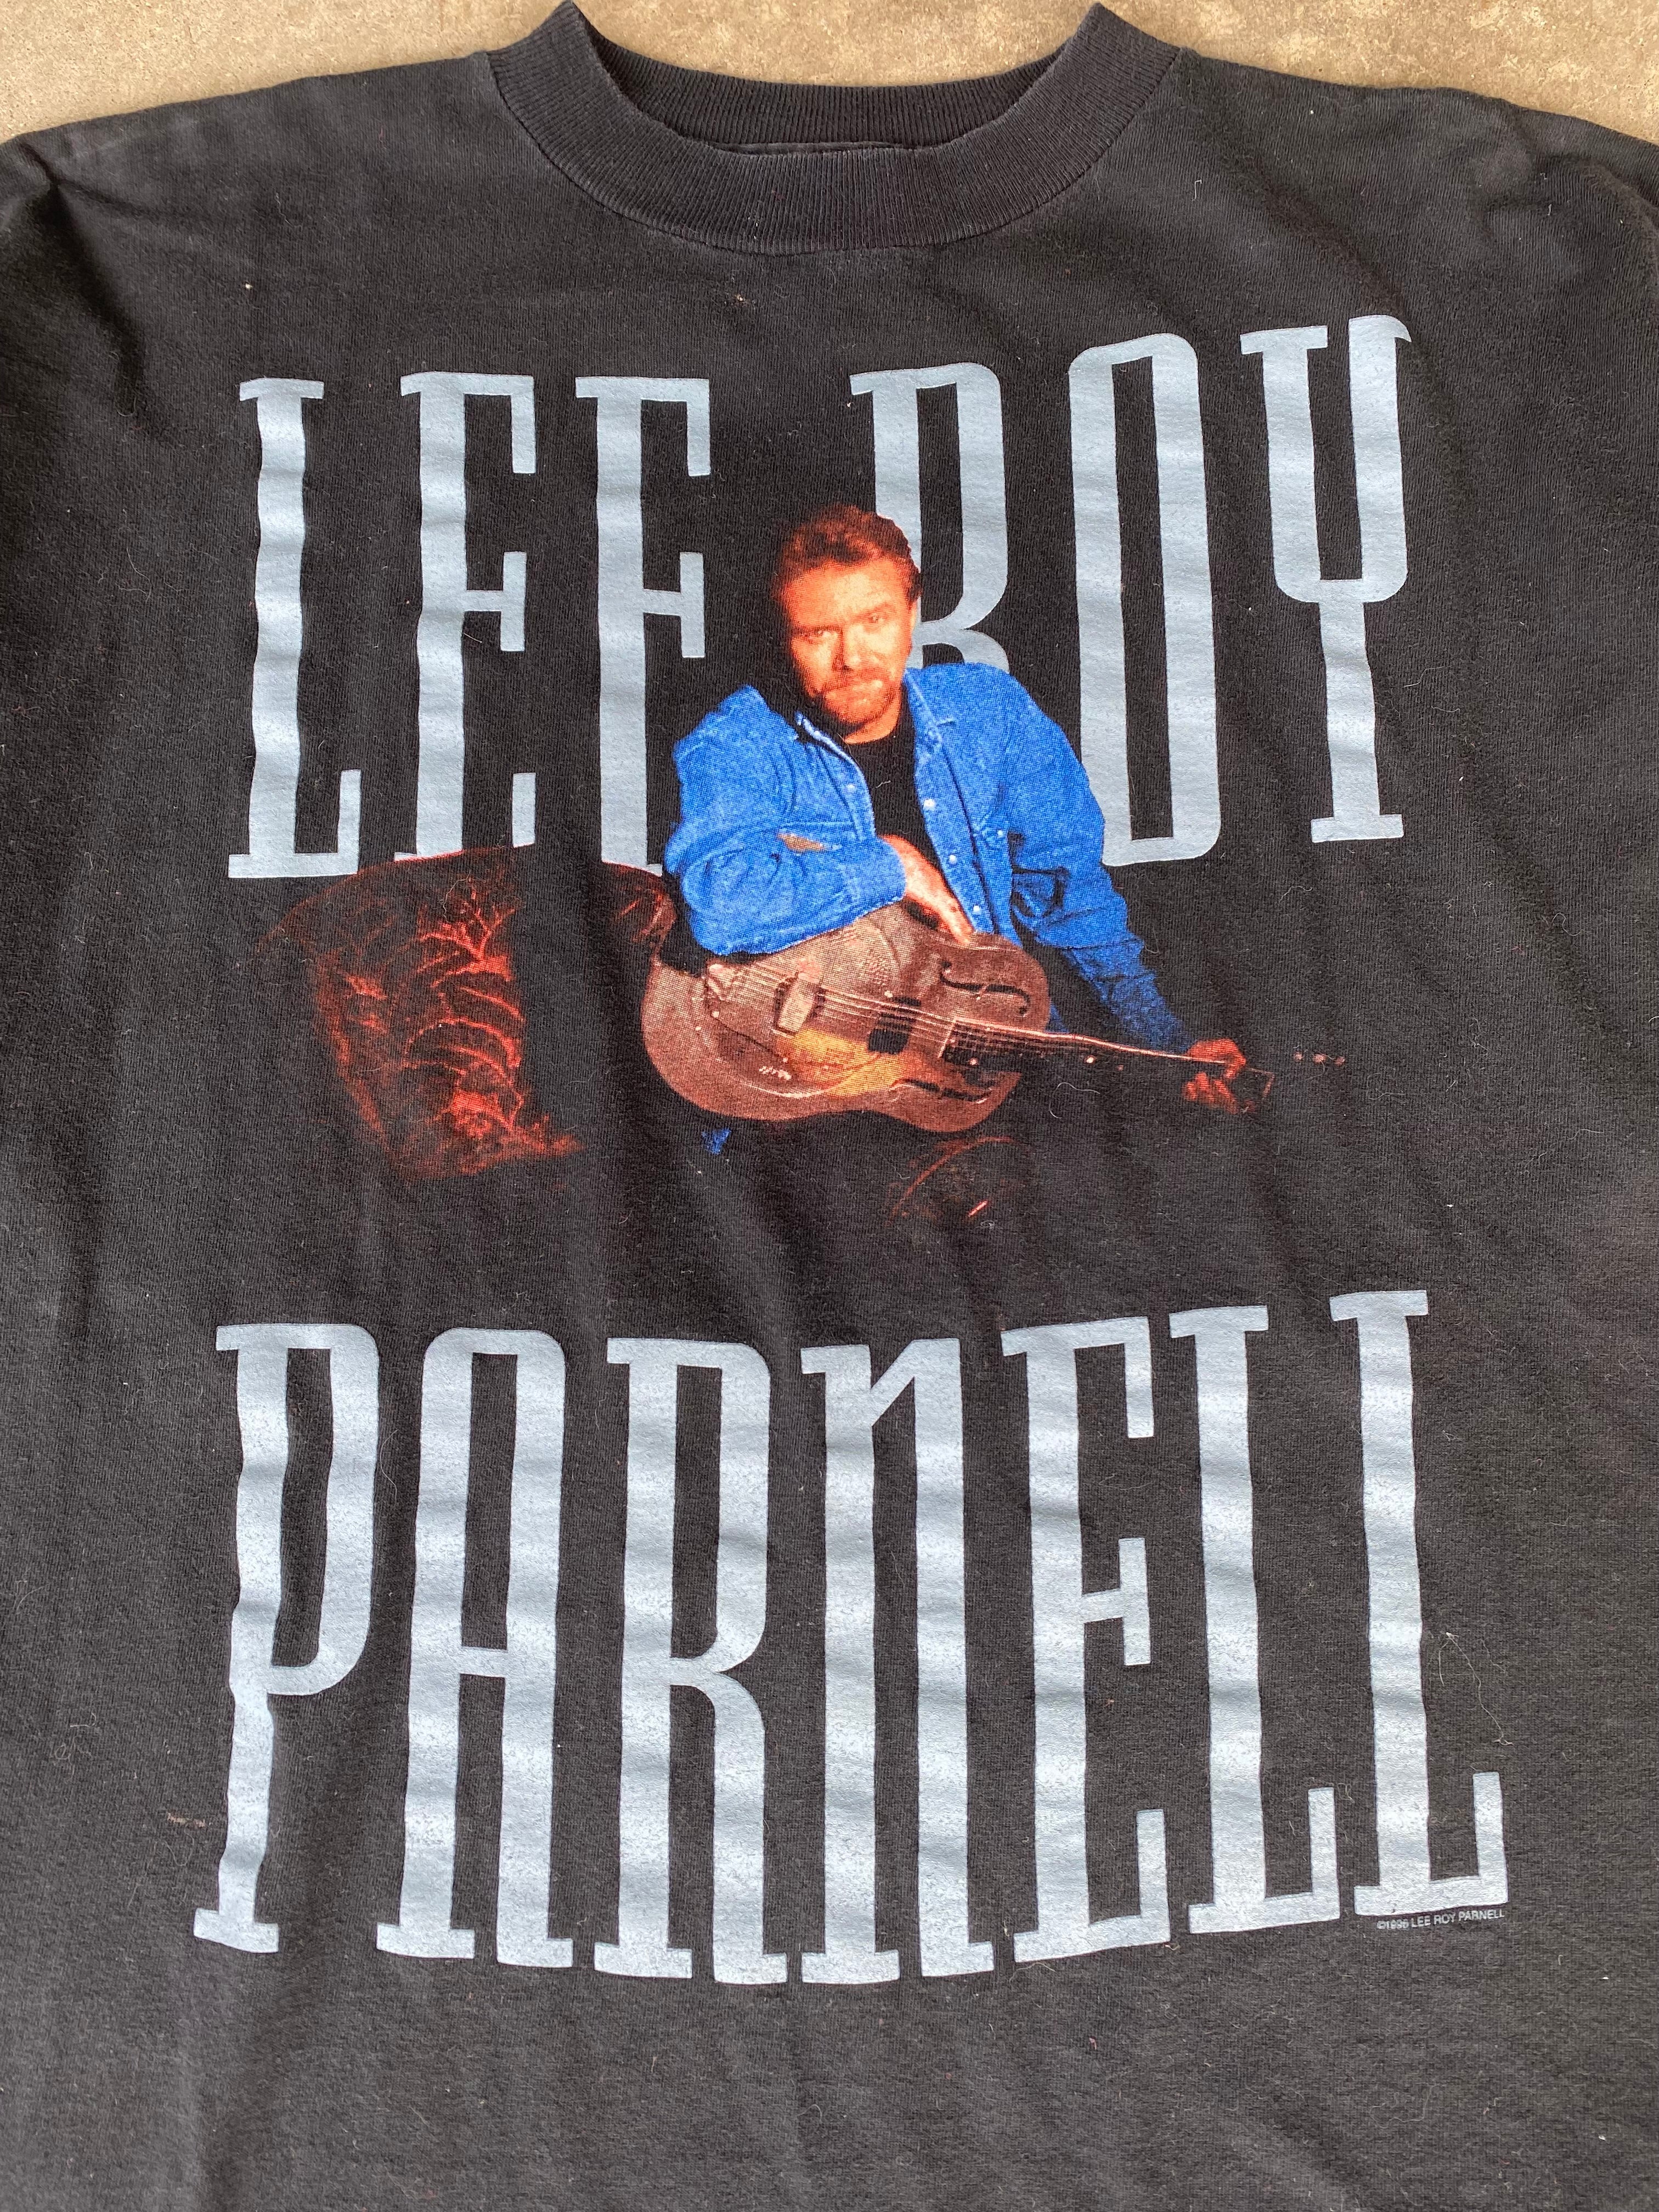 1996 Lee Roy Parnell Tour T-Shirt (XL)